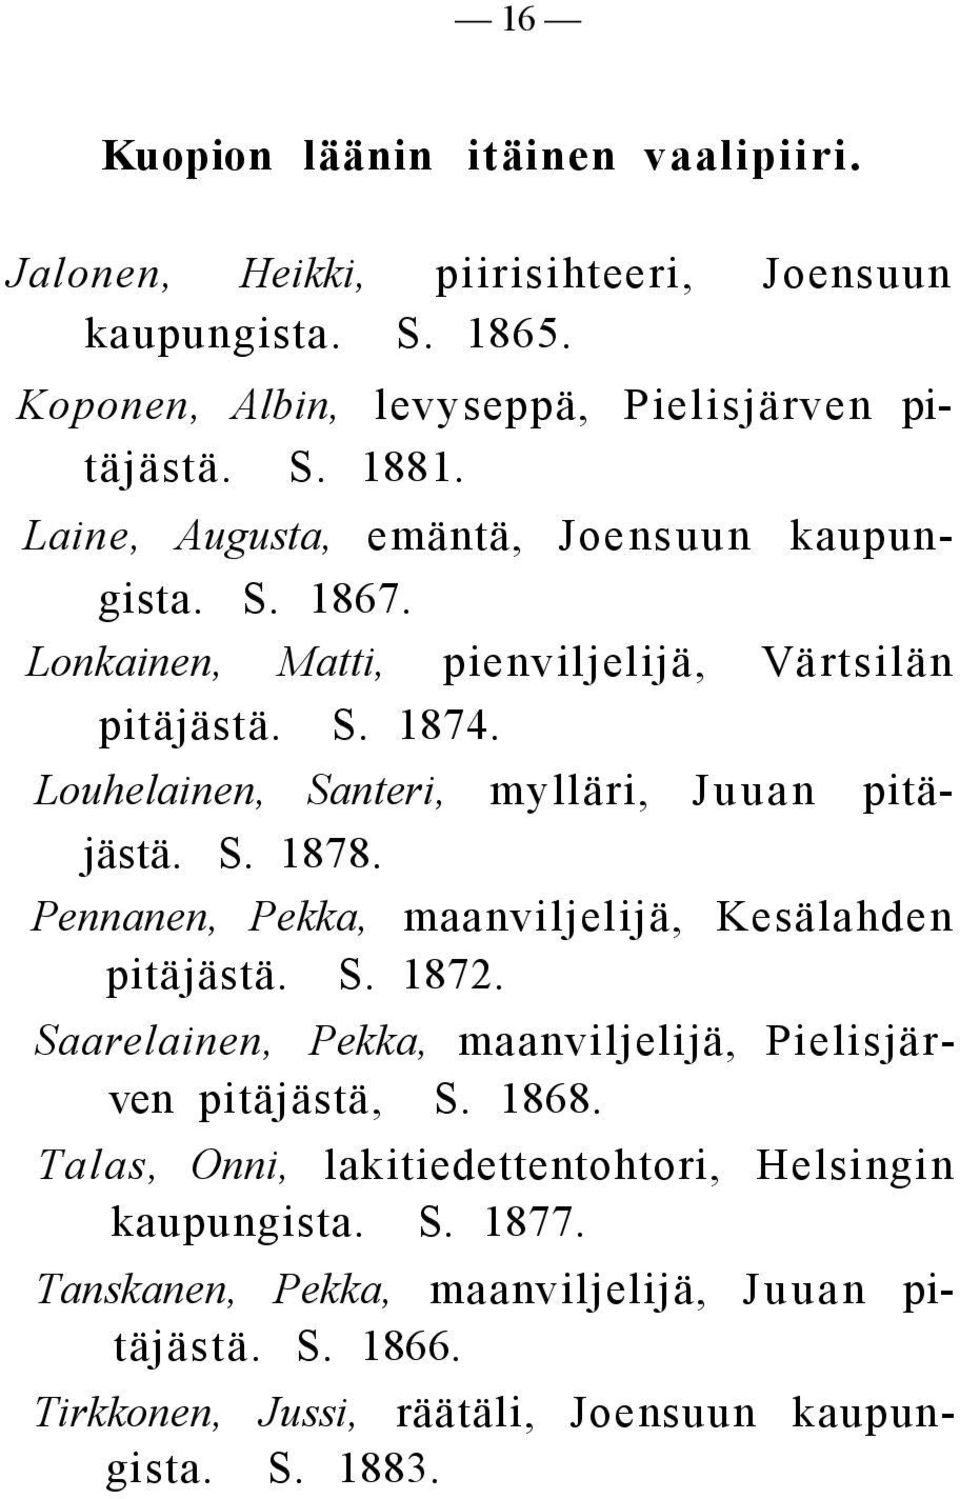 Louhelainen, Santeri, mylläri, Juuan pitäjästä. S. 1878. Pennanen, Pekka, maanviljelijä, Kesälahden pitäjästä. S. 1872.